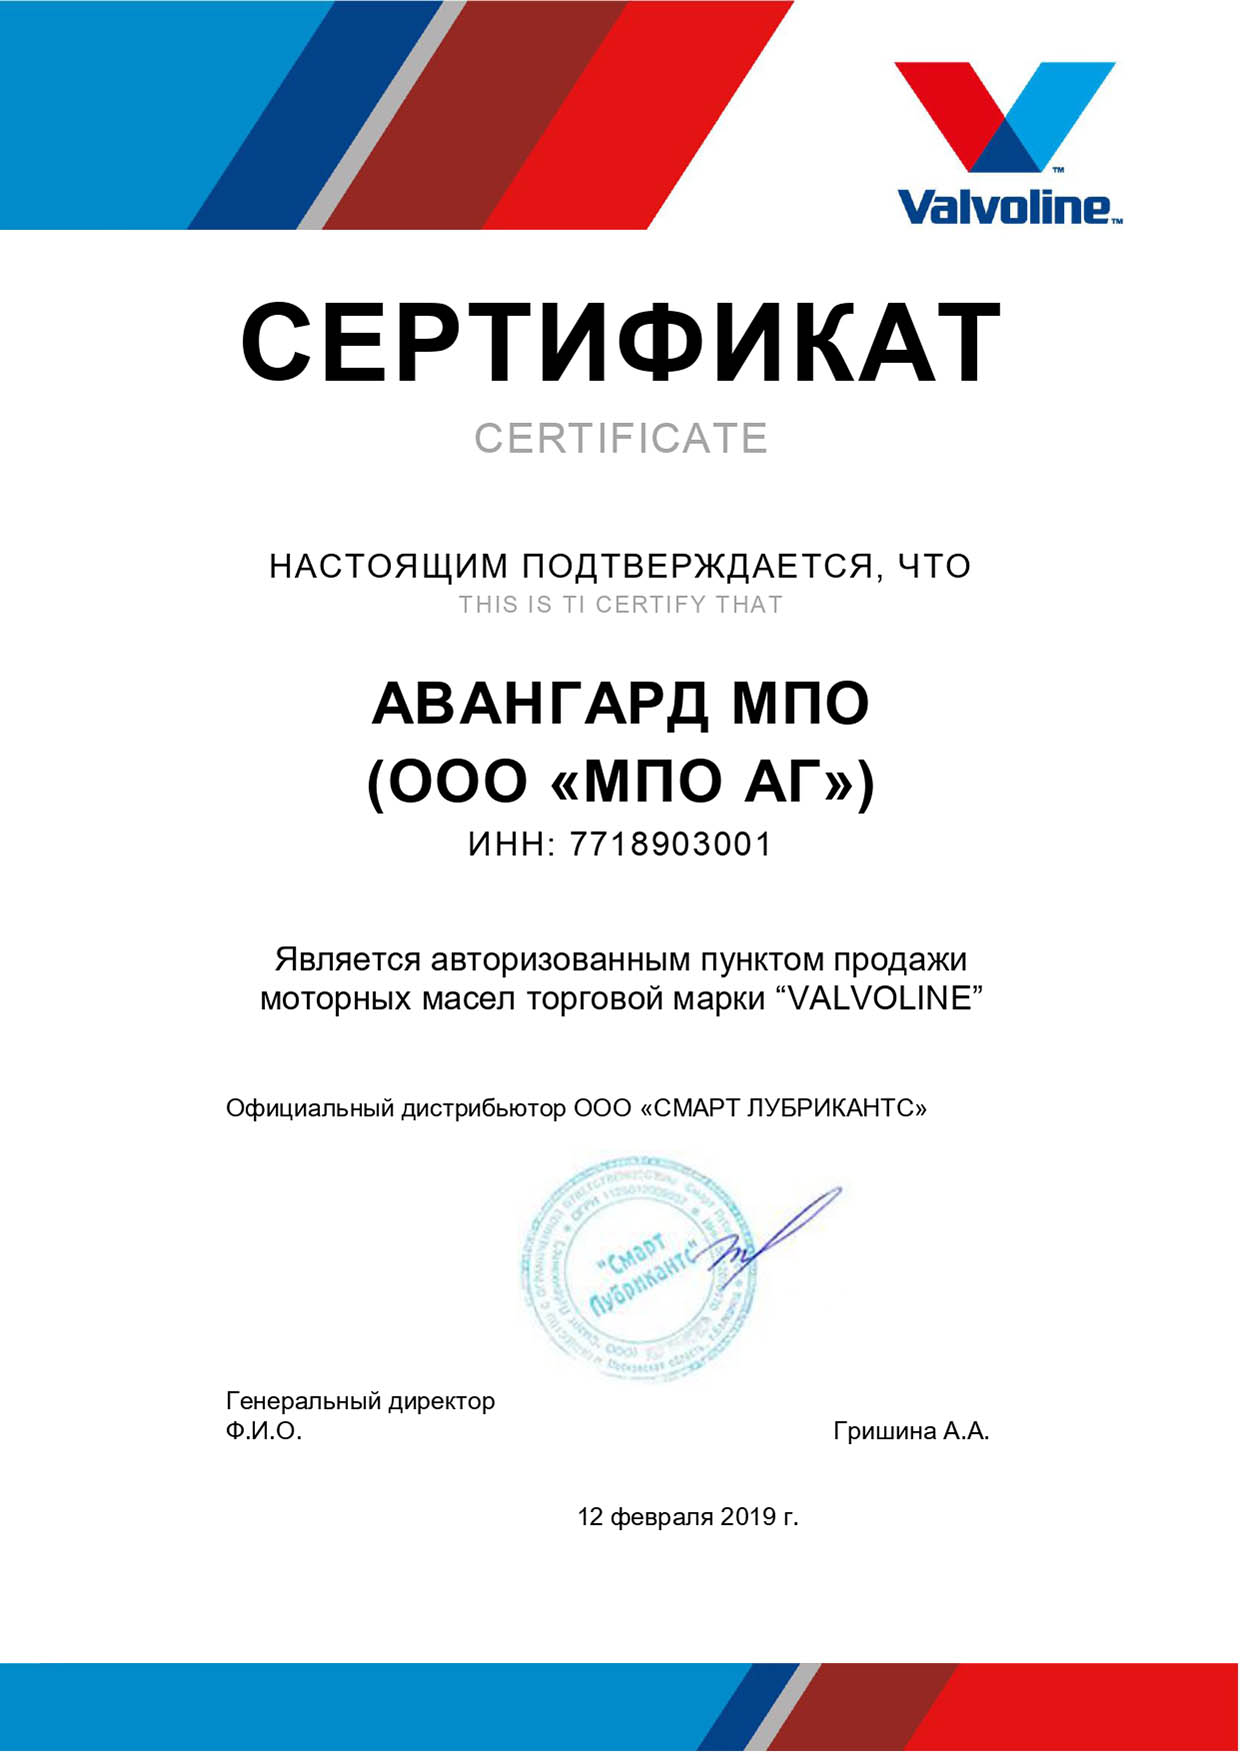 Сертификат Valvoline